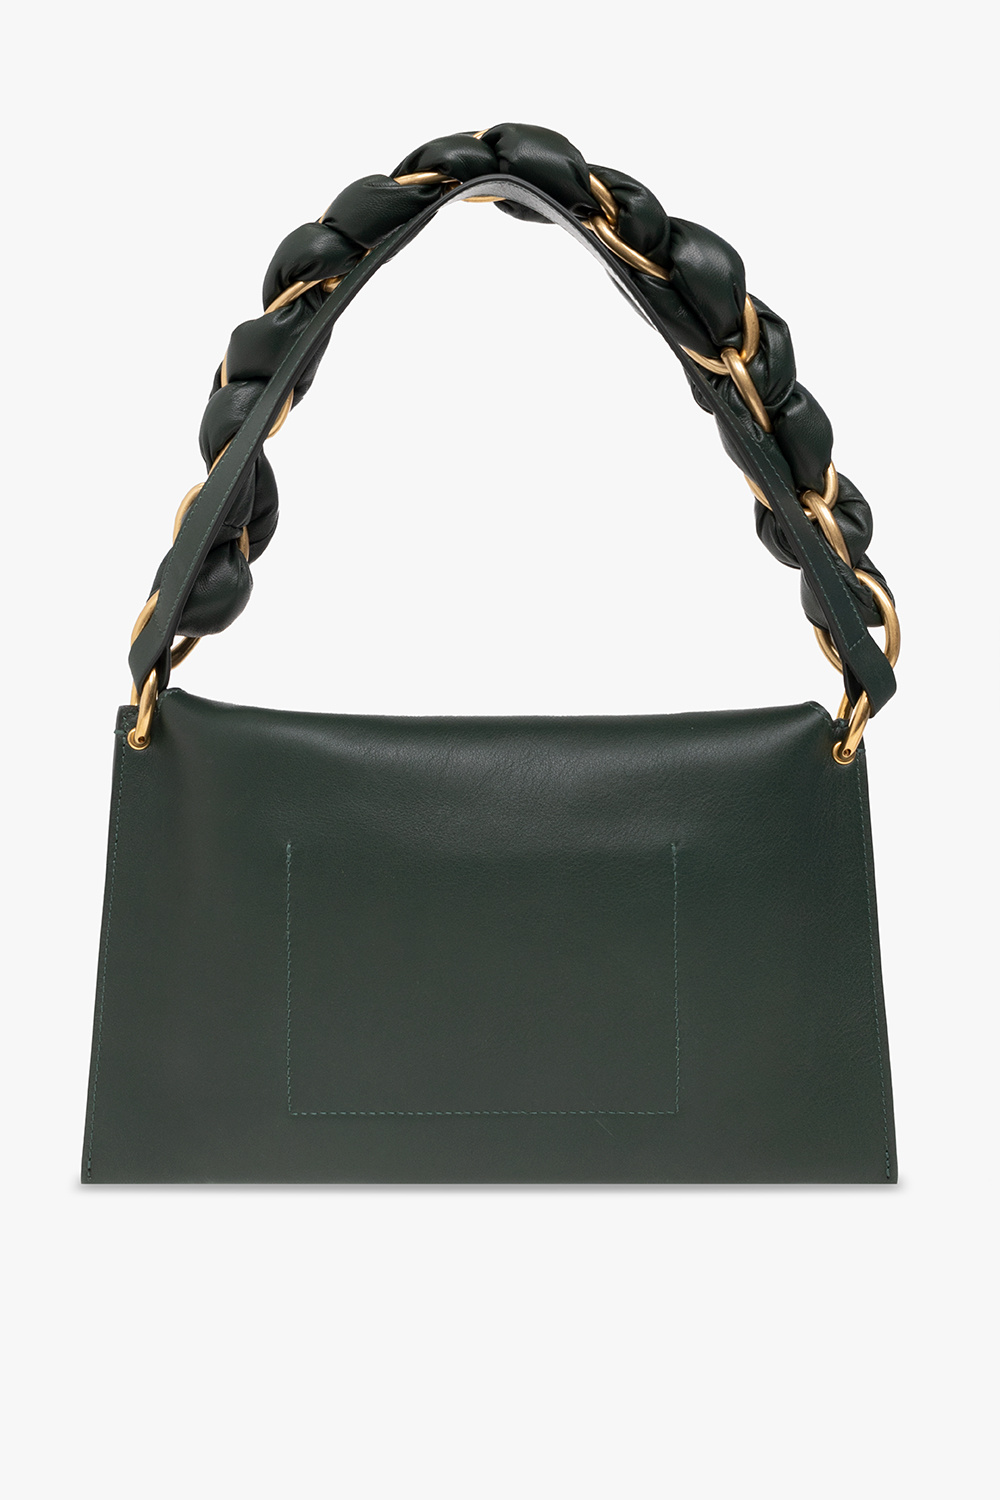 proenza label Schouler ‘Braid’ leather shoulder bag